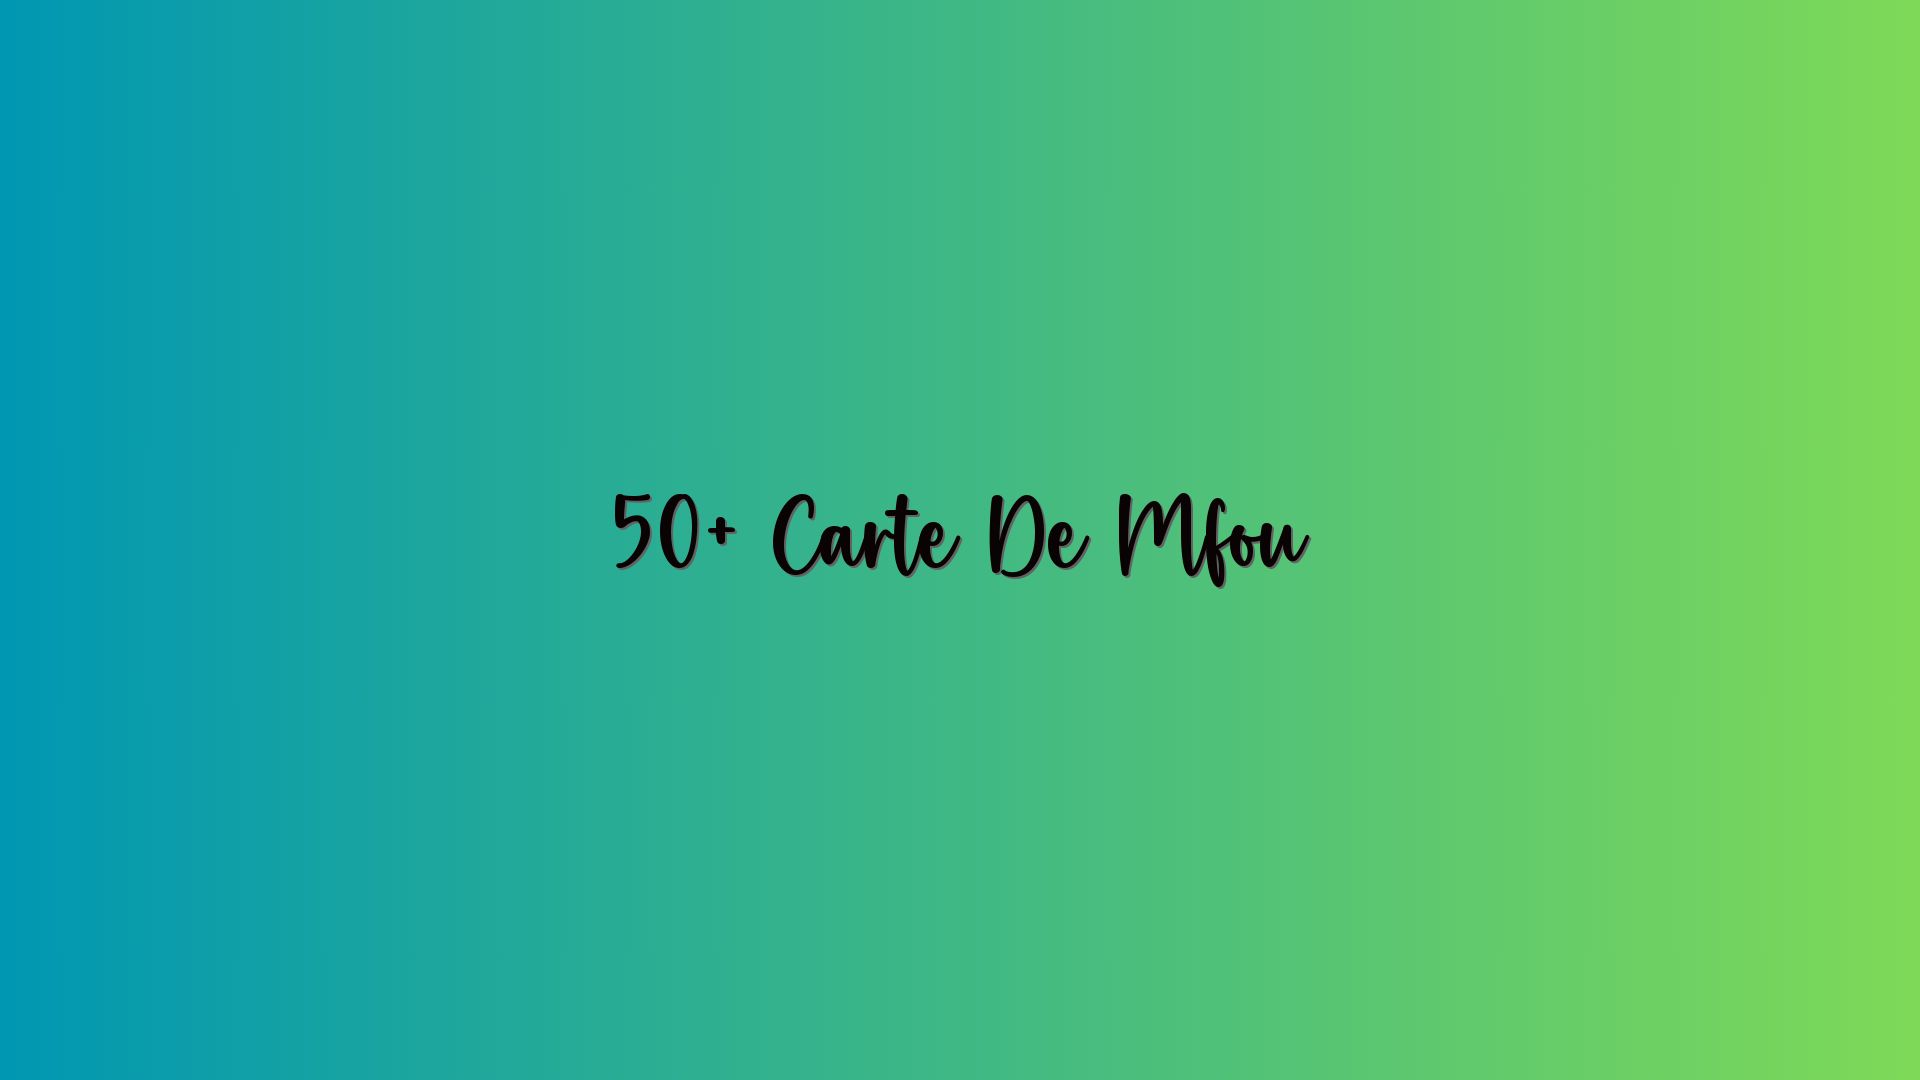 50+ Carte De Mfou